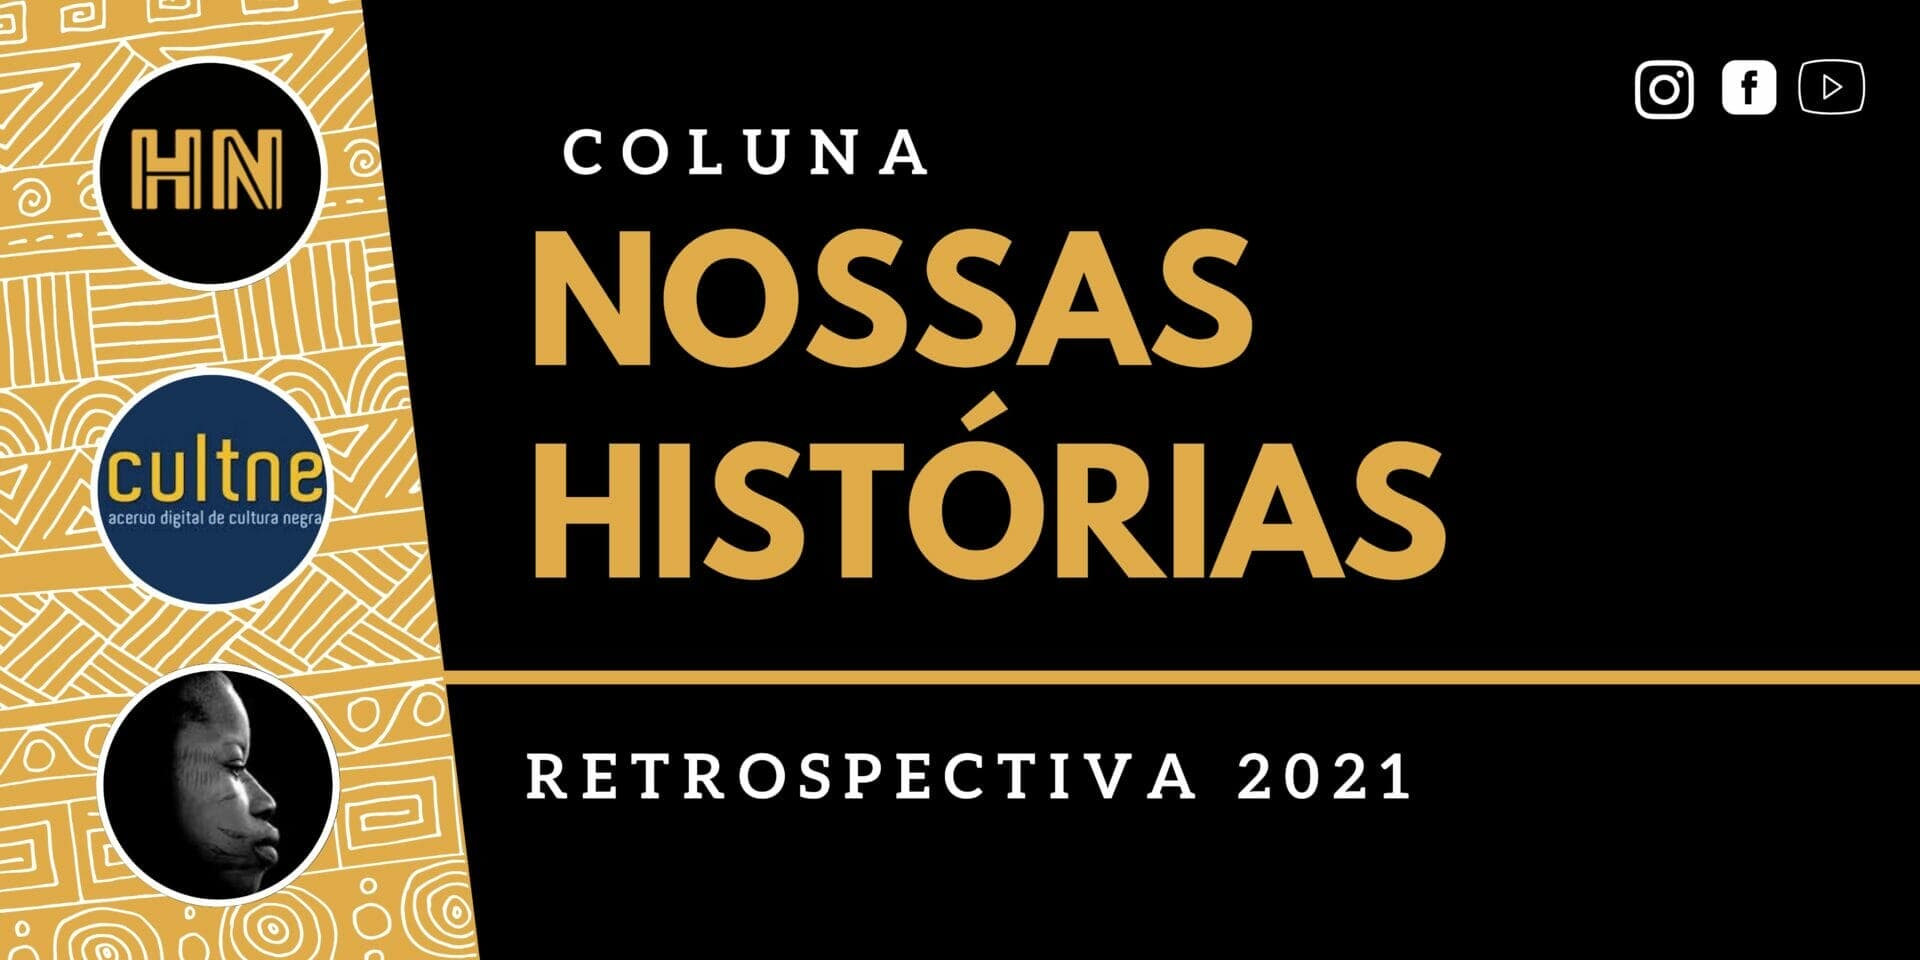 Retrospectiva 2021 da coluna NOSSAS HISTÓRIAS – Aqui a gente conta!